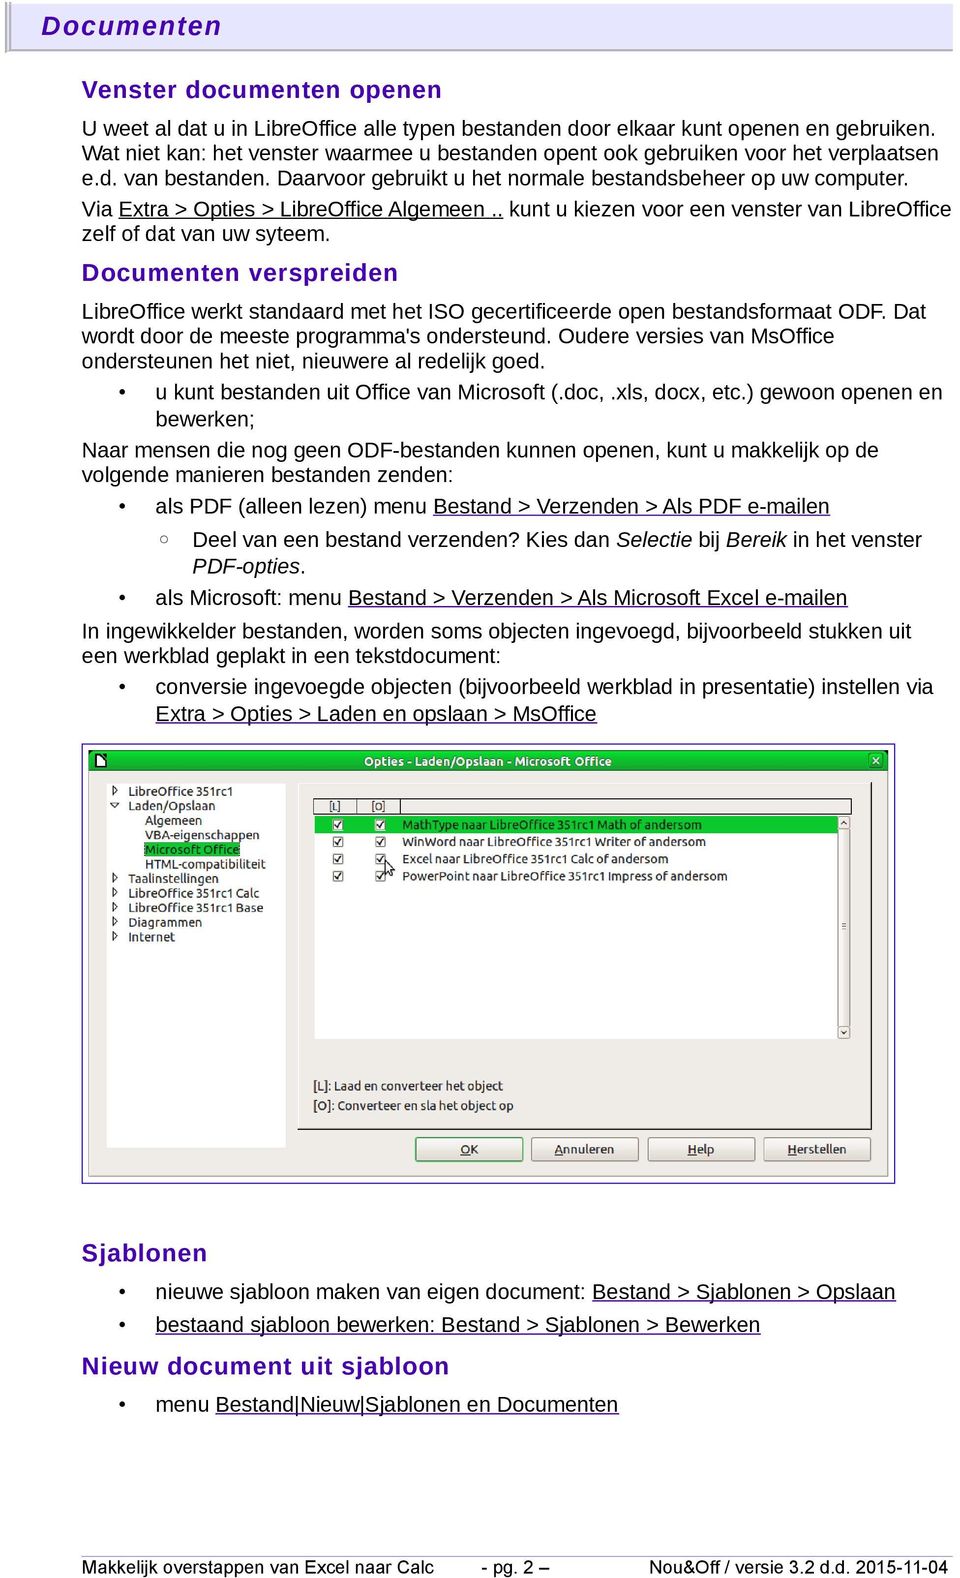 Via Extra > Opties > LibreOffice Algemeen.. kunt u kiezen voor een venster van LibreOffice zelf of dat van uw syteem.